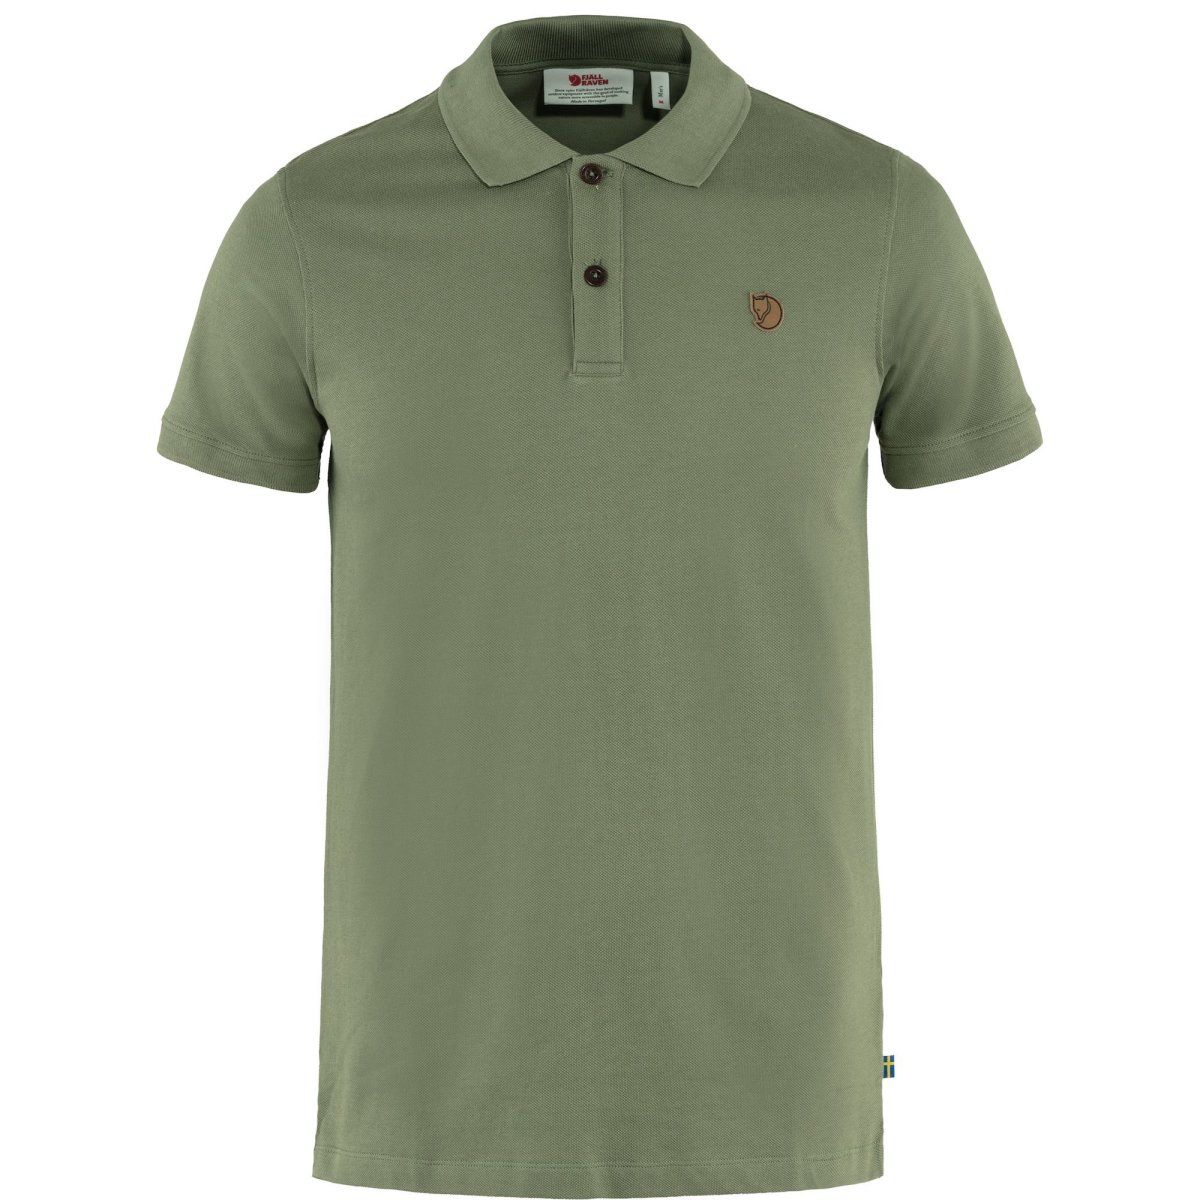 Fj&auml;llr&auml;ven &Ouml;vik Polo Pique Shirt SS 81511 green  Herren Polohemd Kurzarm  Shirt